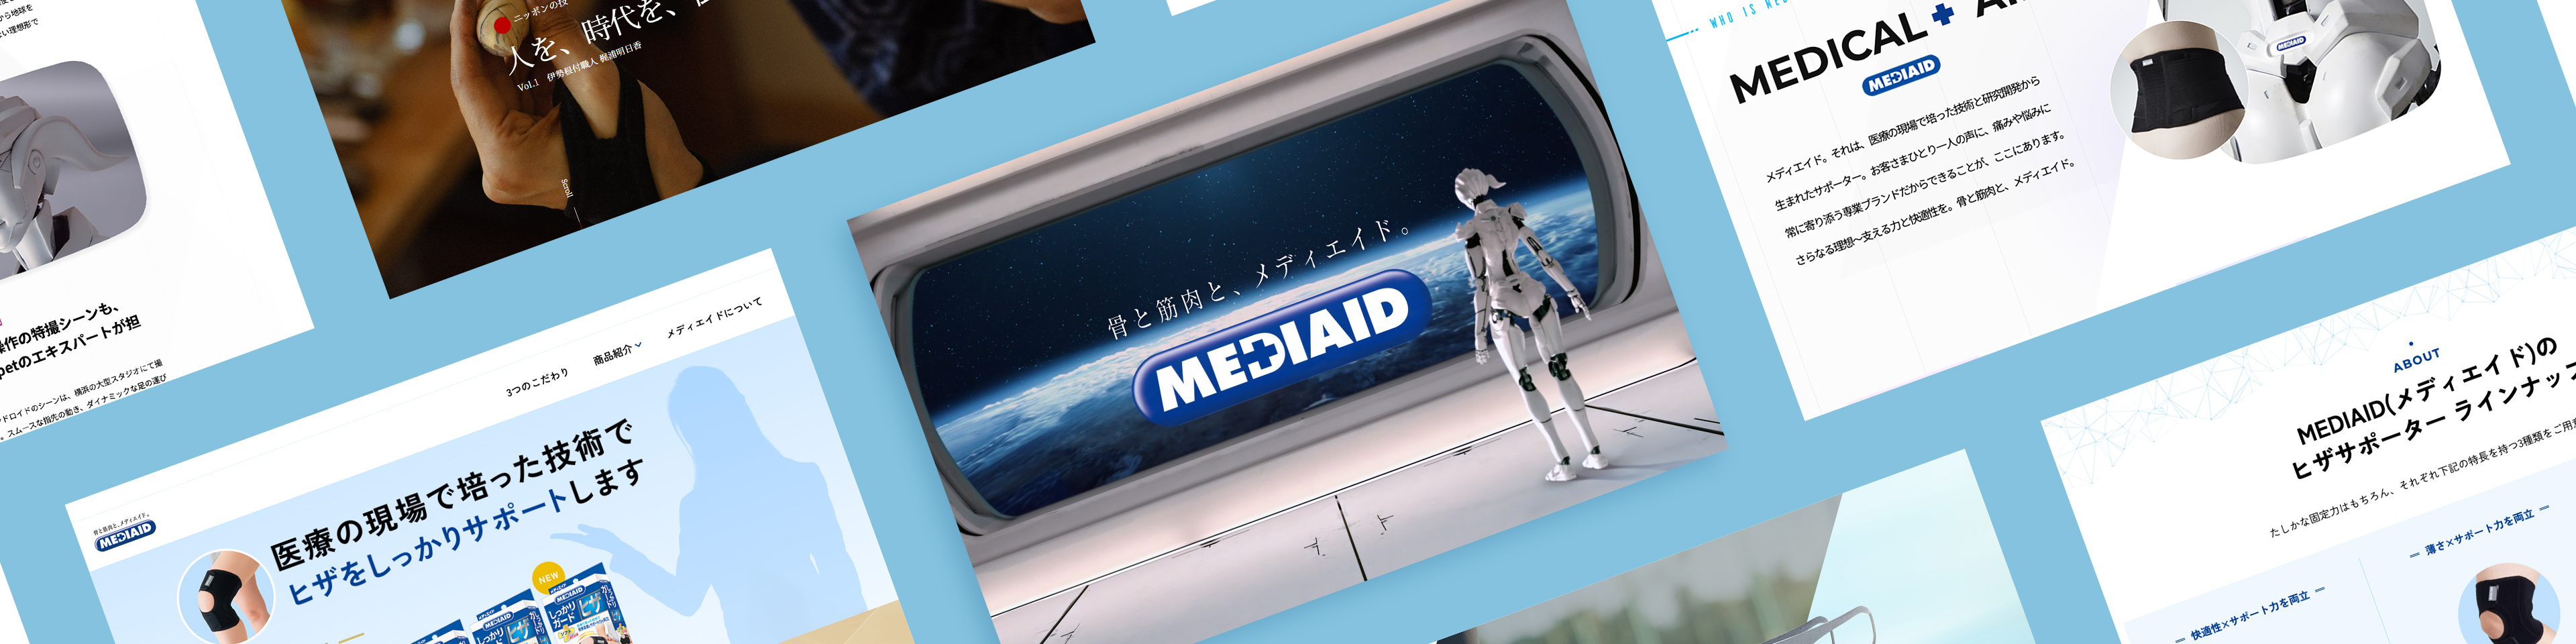 日本シグマックス株式会社
MEDIAID
デジタルマーケティング